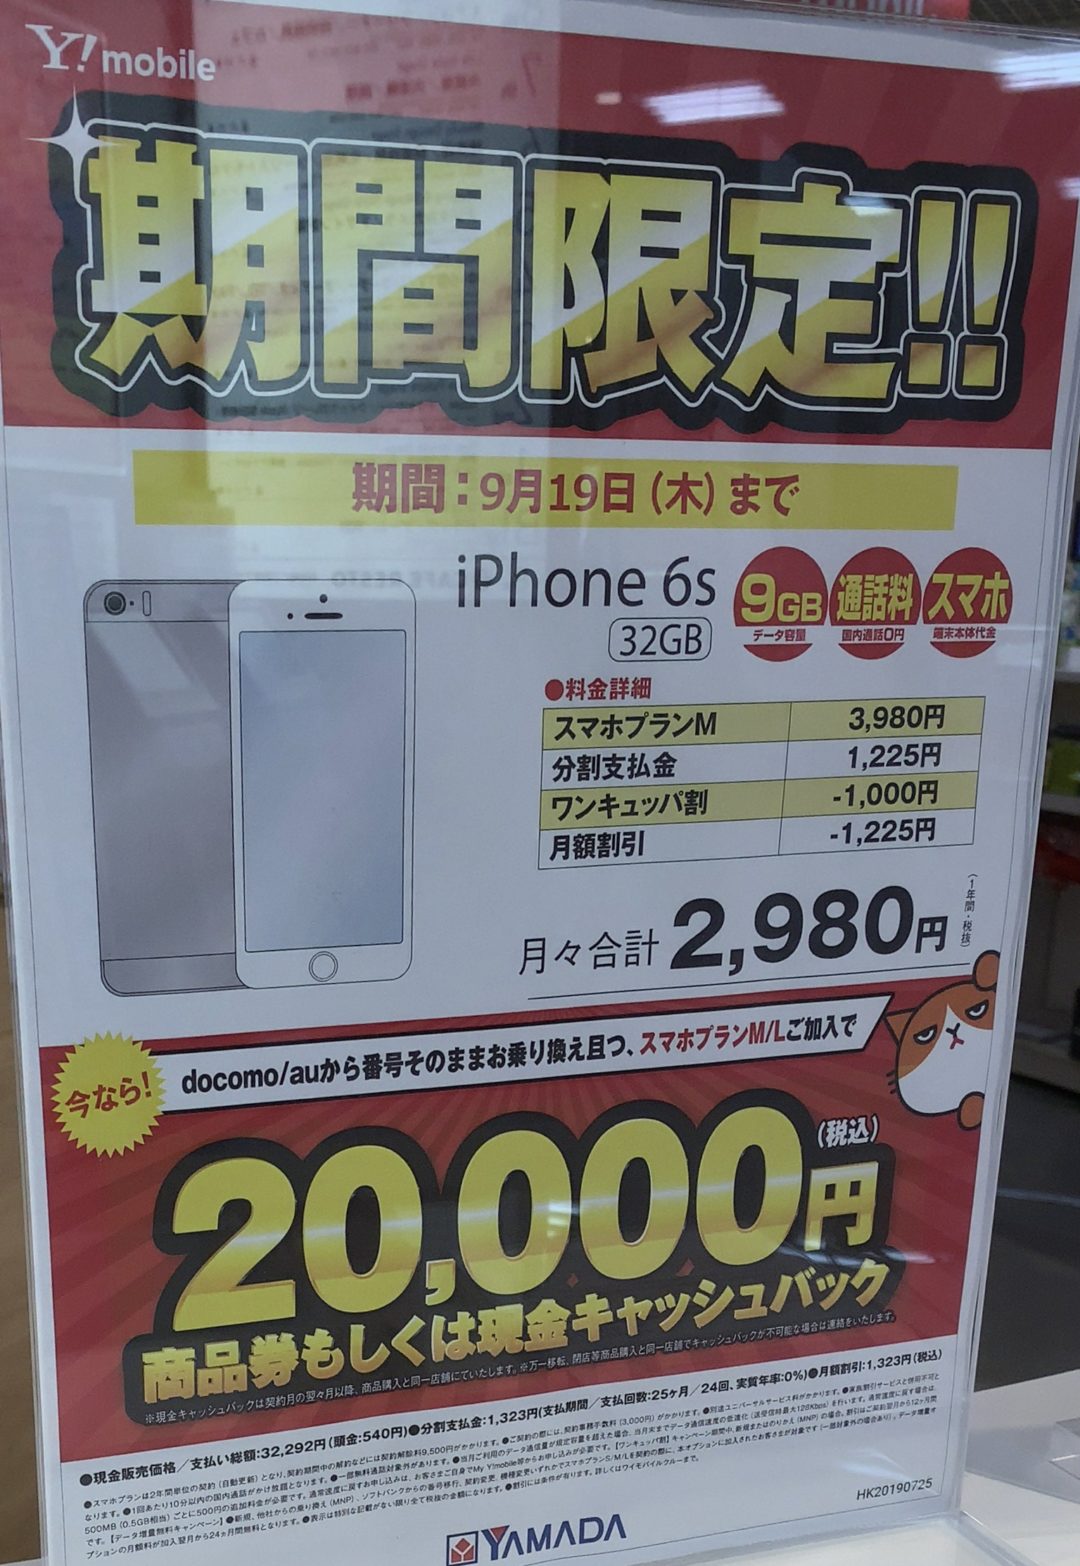 ヤマダ電機でワイモバイルのiphone 6sの32gbがmnpで2万円キャッシュバック 9 19 木 まで